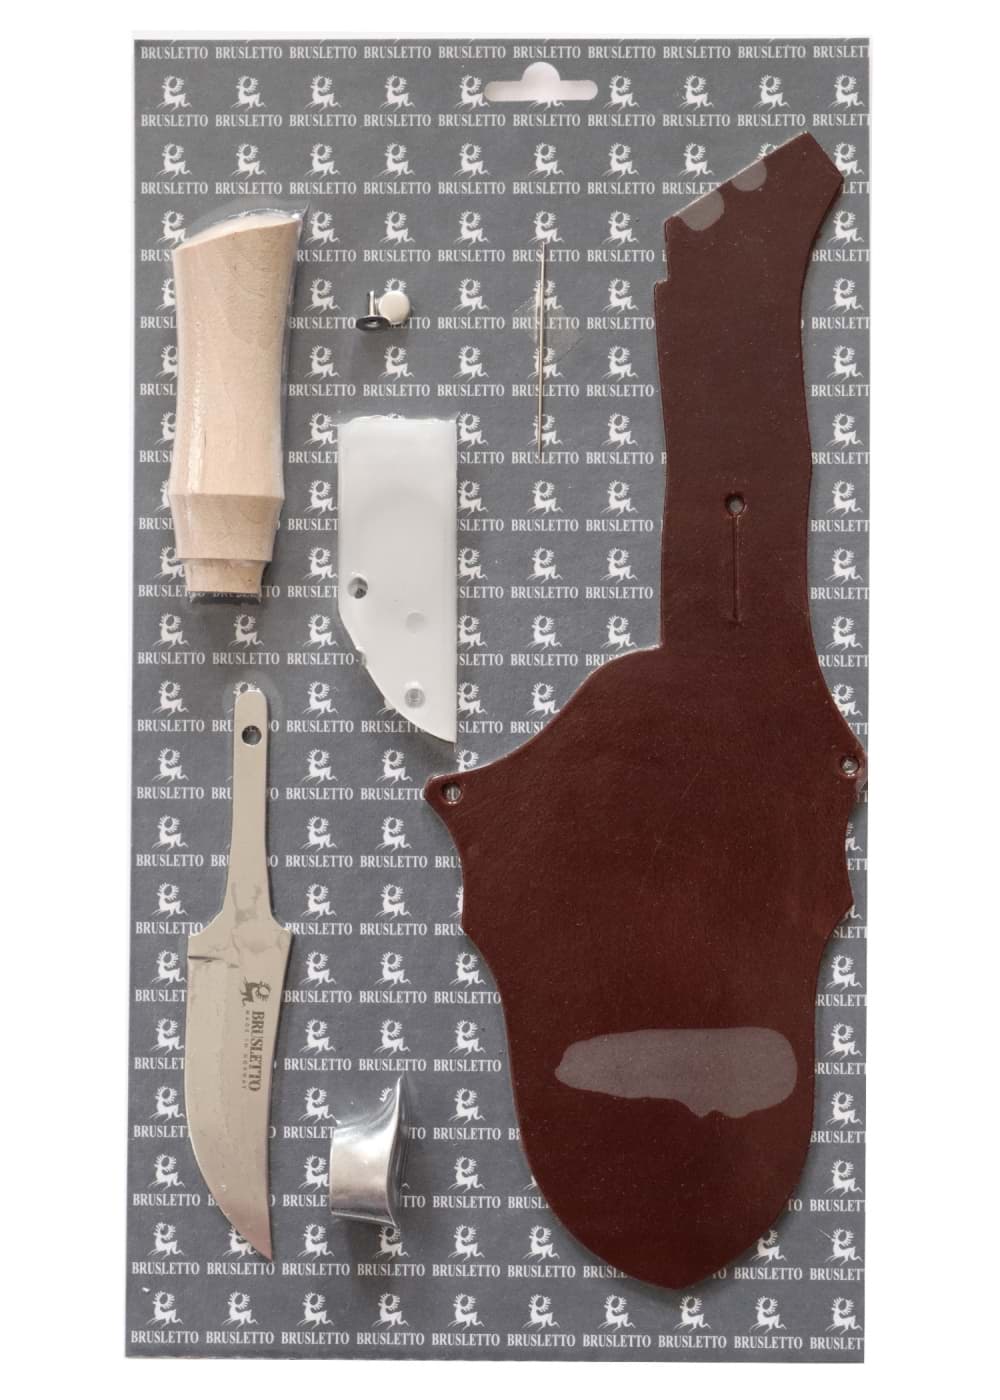 Immagine di Brusletto - Kit coltelli Falcon